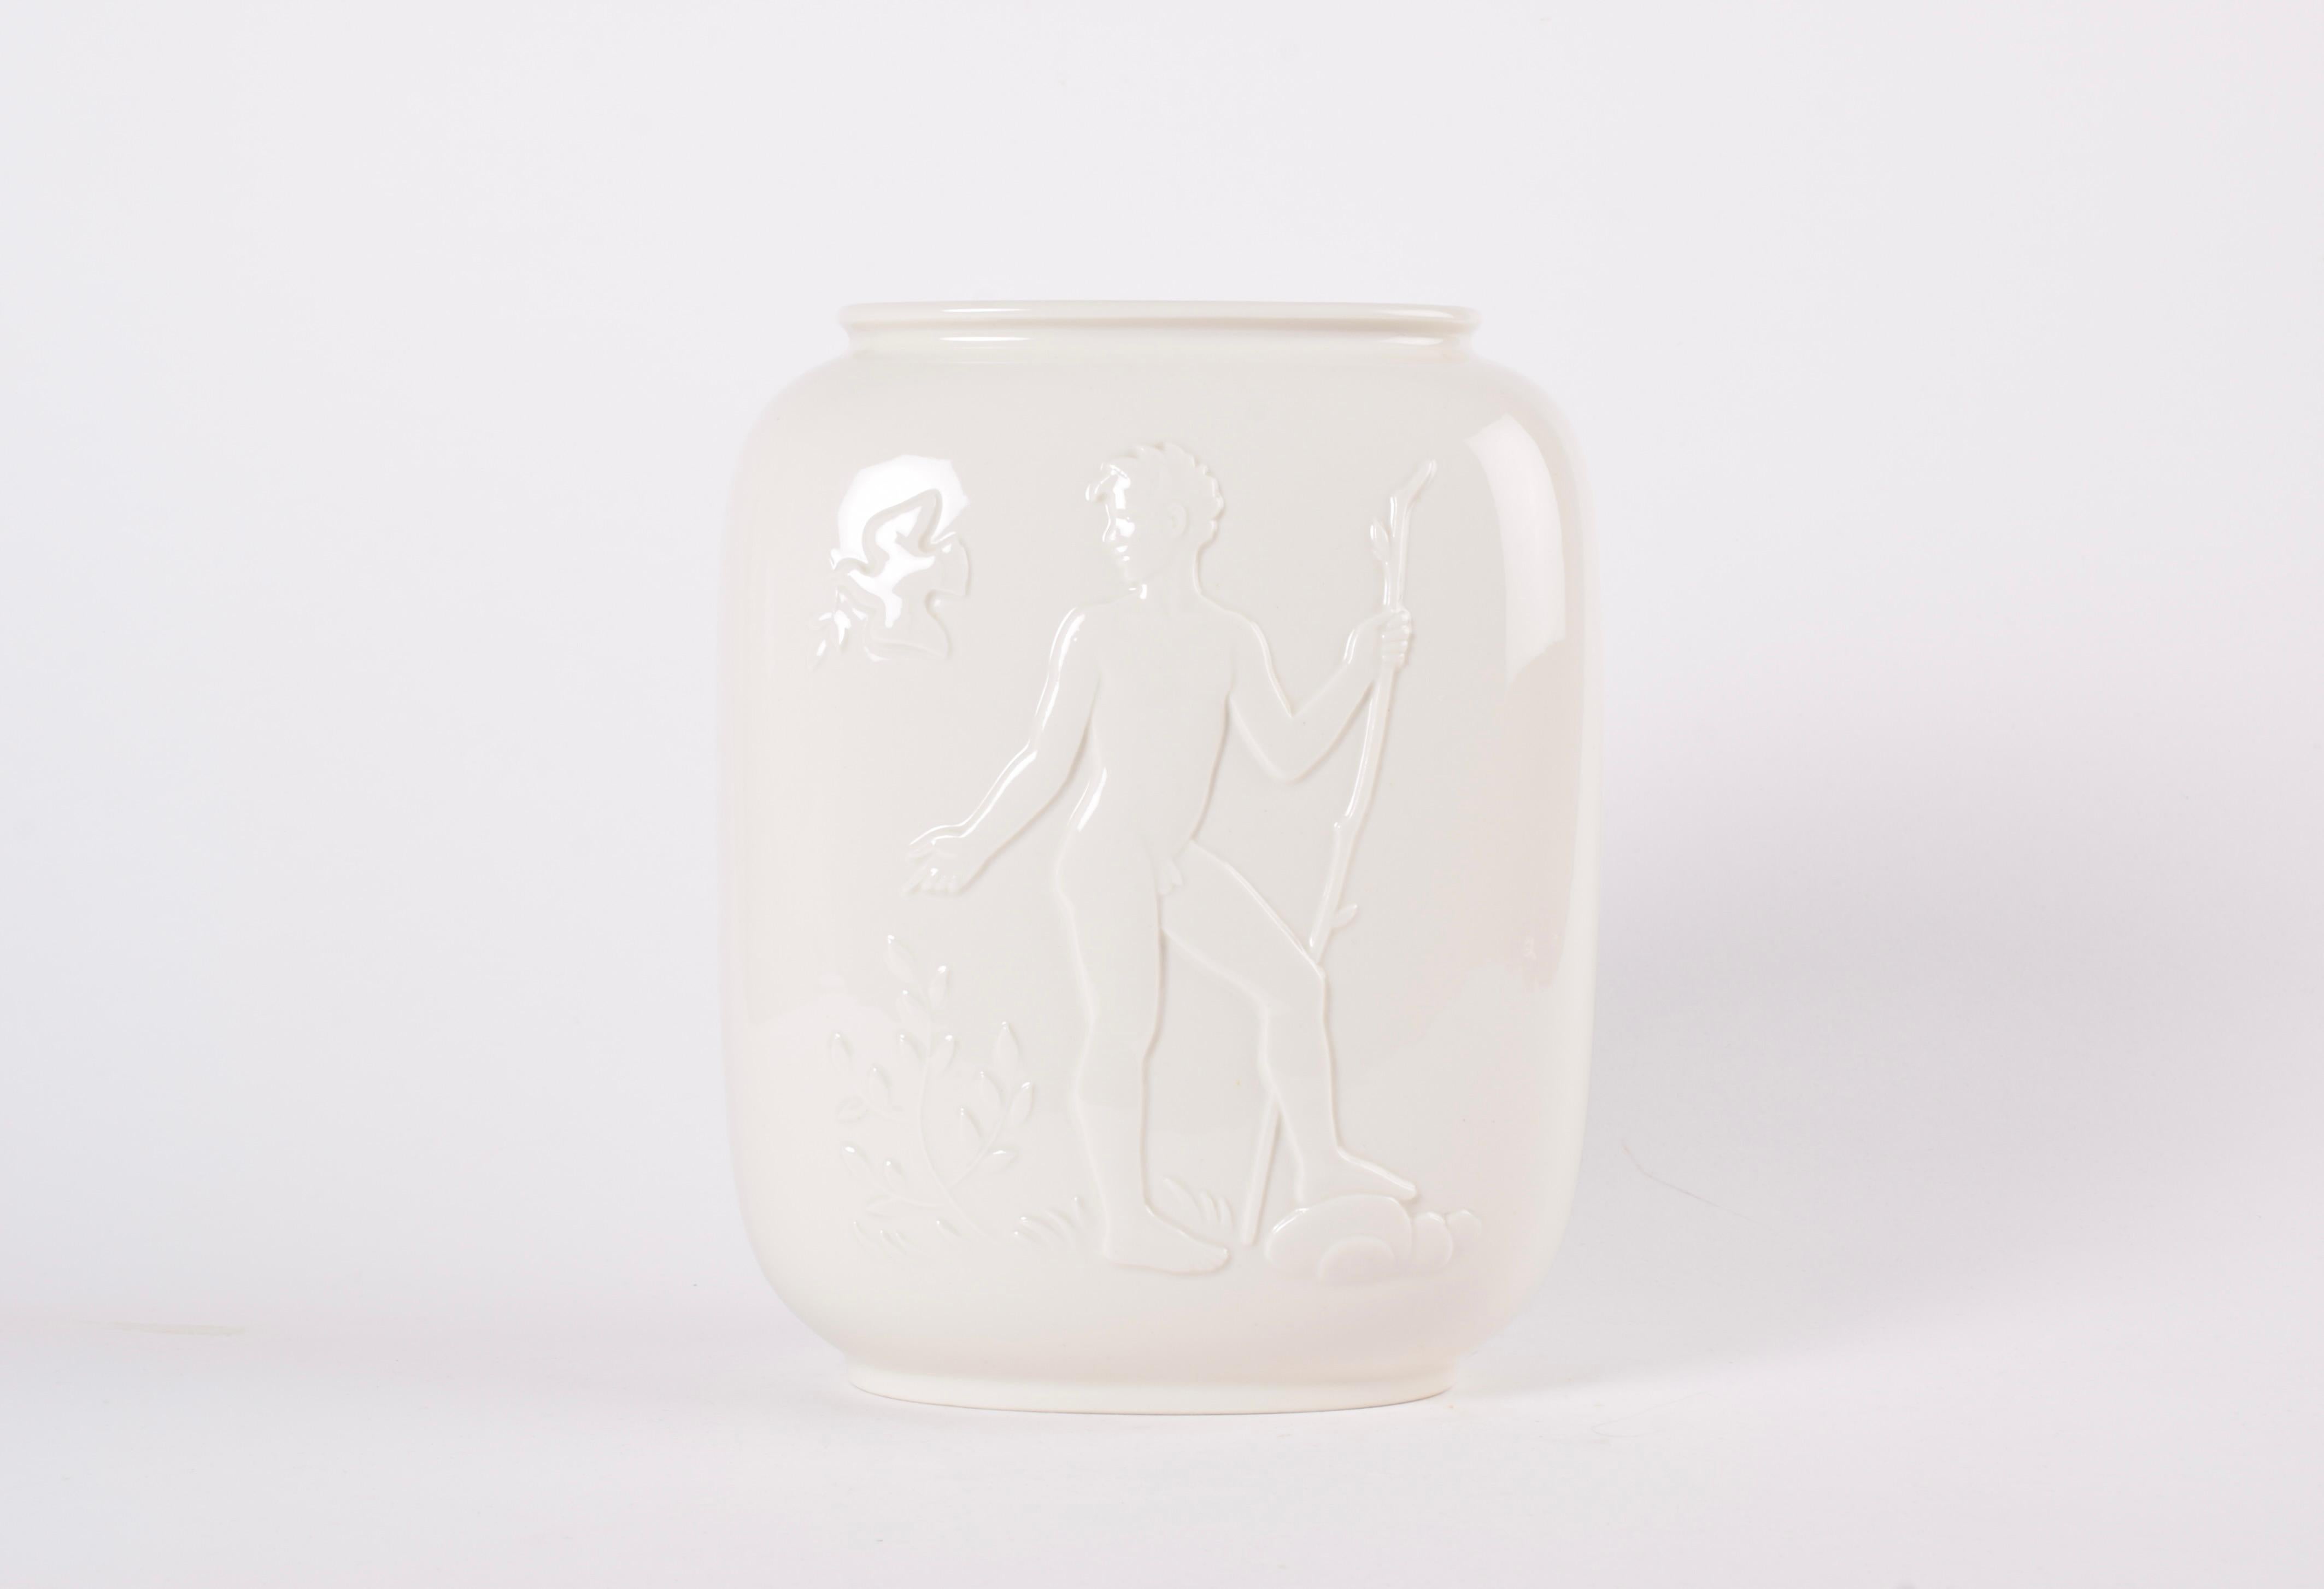 Große Royal Copenhagen Art Deco Vase von Hans Henrik Hansen, hergestellt 1944. Hergestellt aus Blanc de Chine.

Die Vase zeigt eine junge nackte Frau und einen Mann auf beiden Seiten, umgeben von wilden Tieren, Adam und Eva im Paradies. 

Auf der